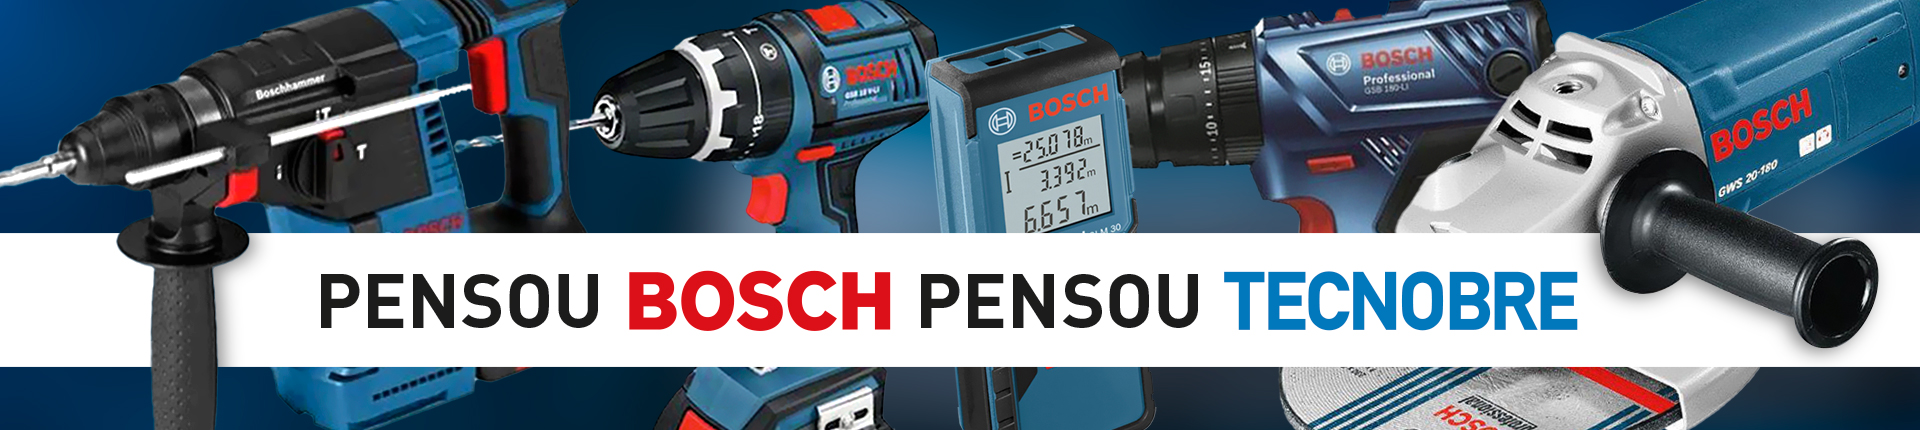 Pensou Bosch Pensou Tecnobre